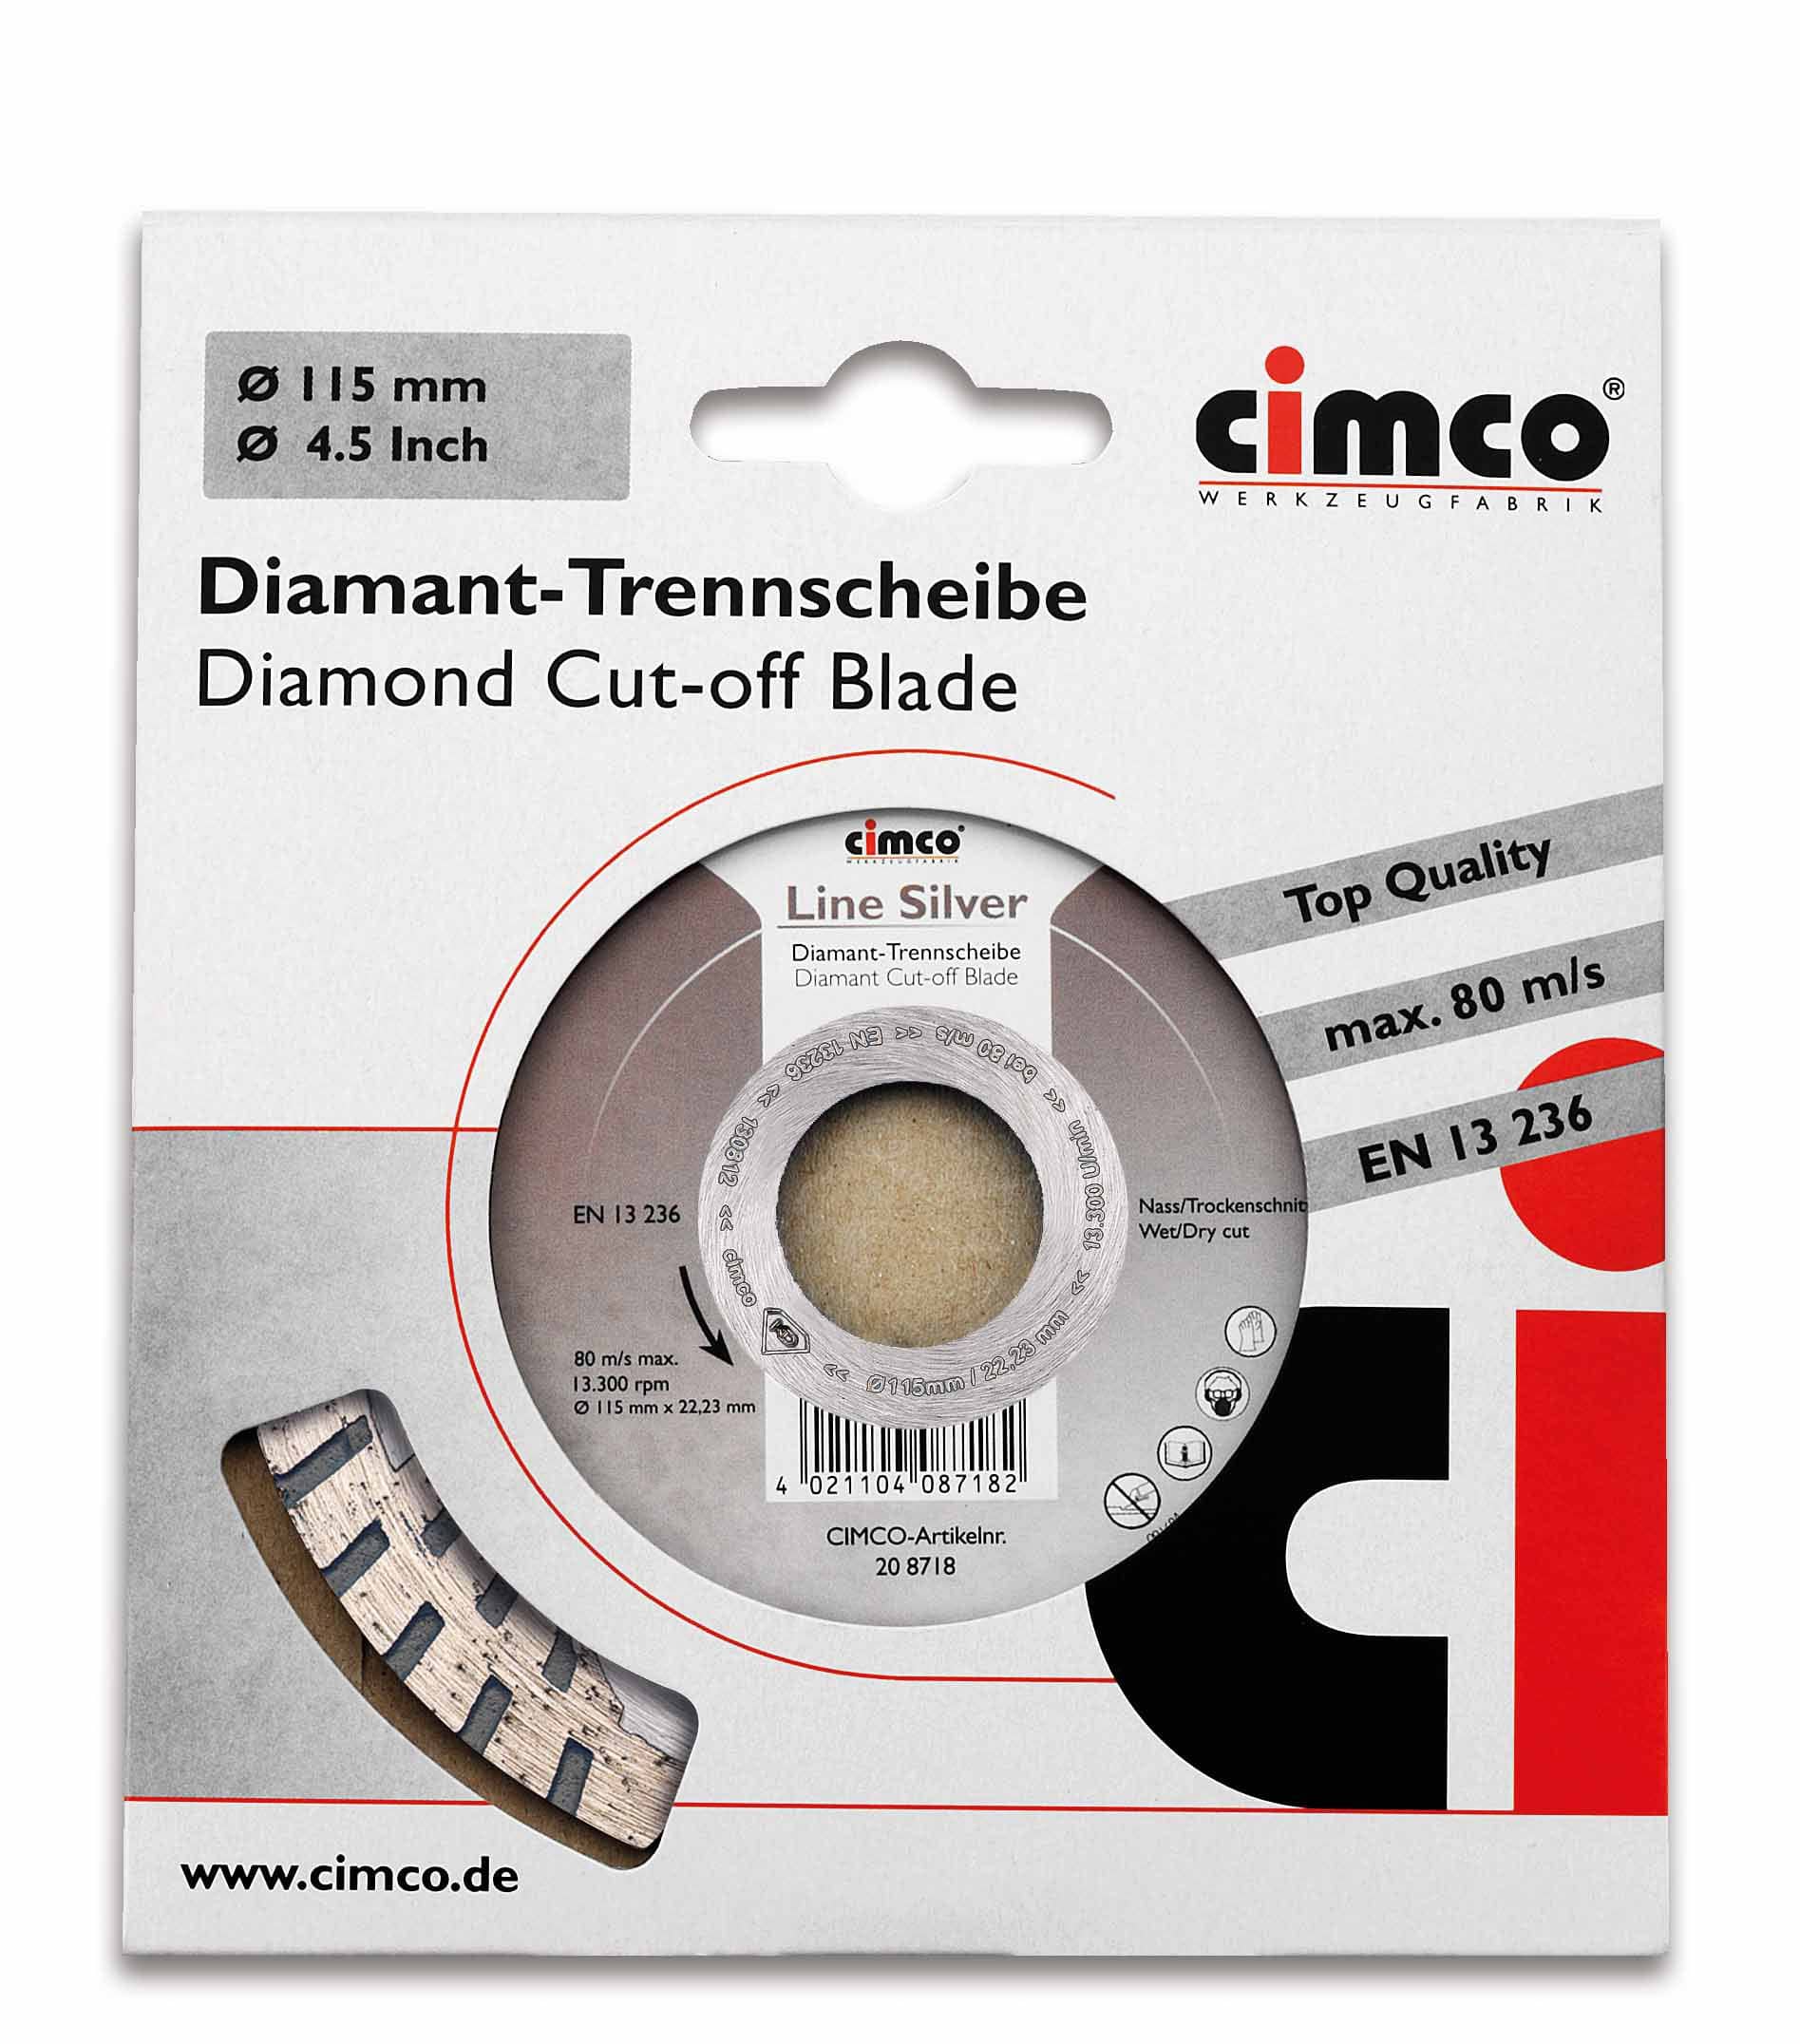 Cimco 20 8718 Diamant-Trennscheibe Line Silver, für Putz und Estrich, Scheiben Ø 115 mm